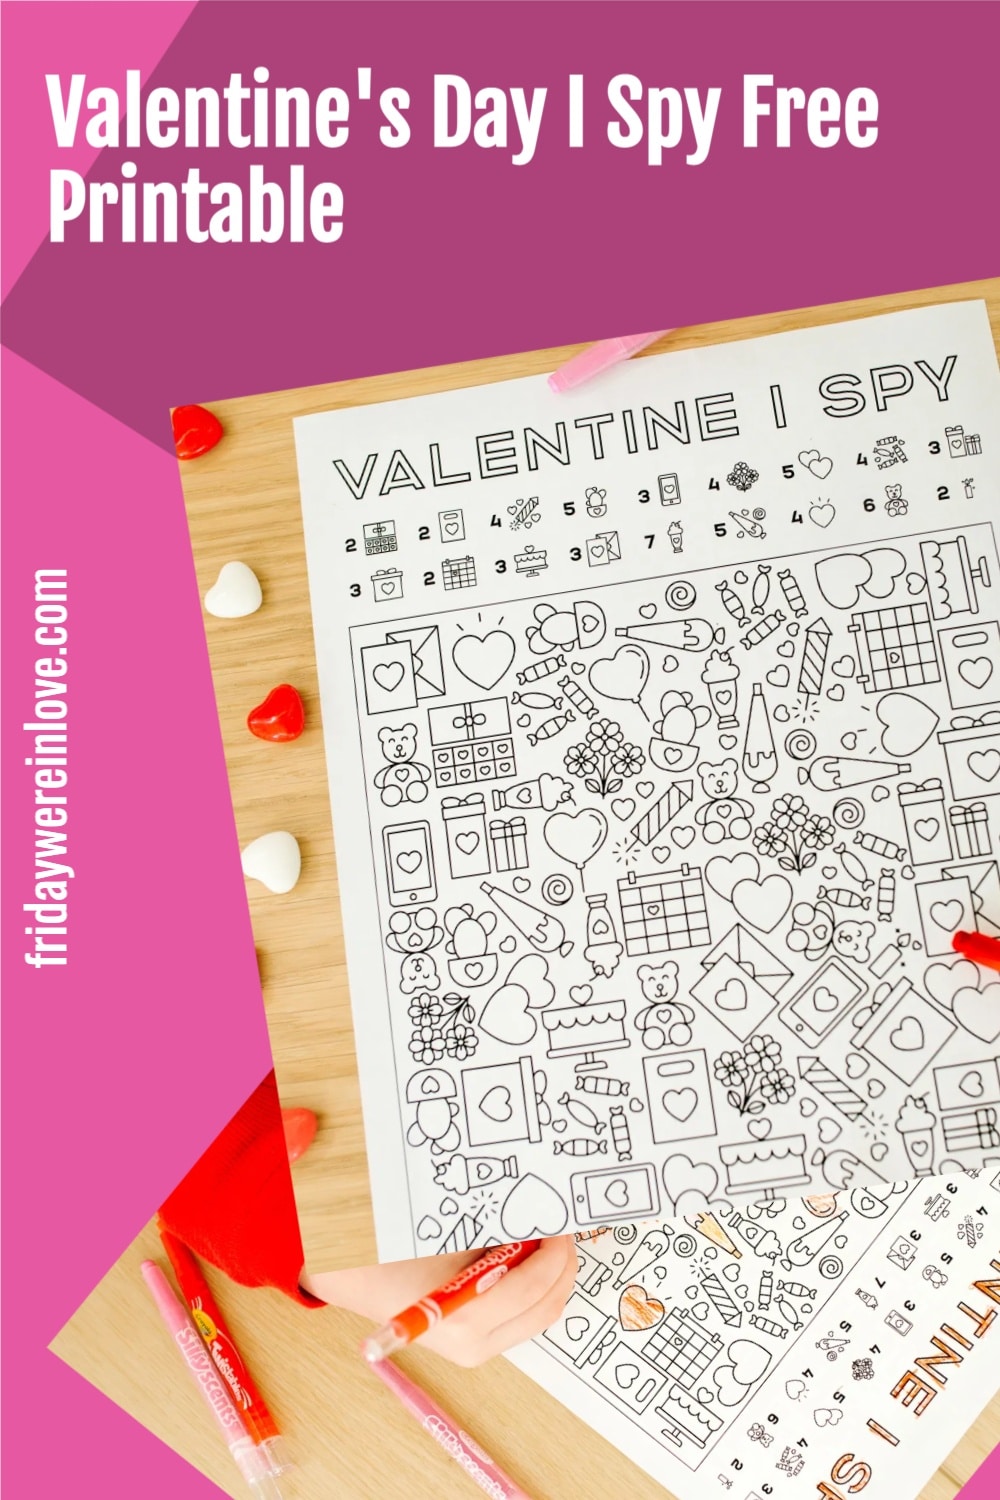 I Spy Valentine's Printable - Friday We're In Love